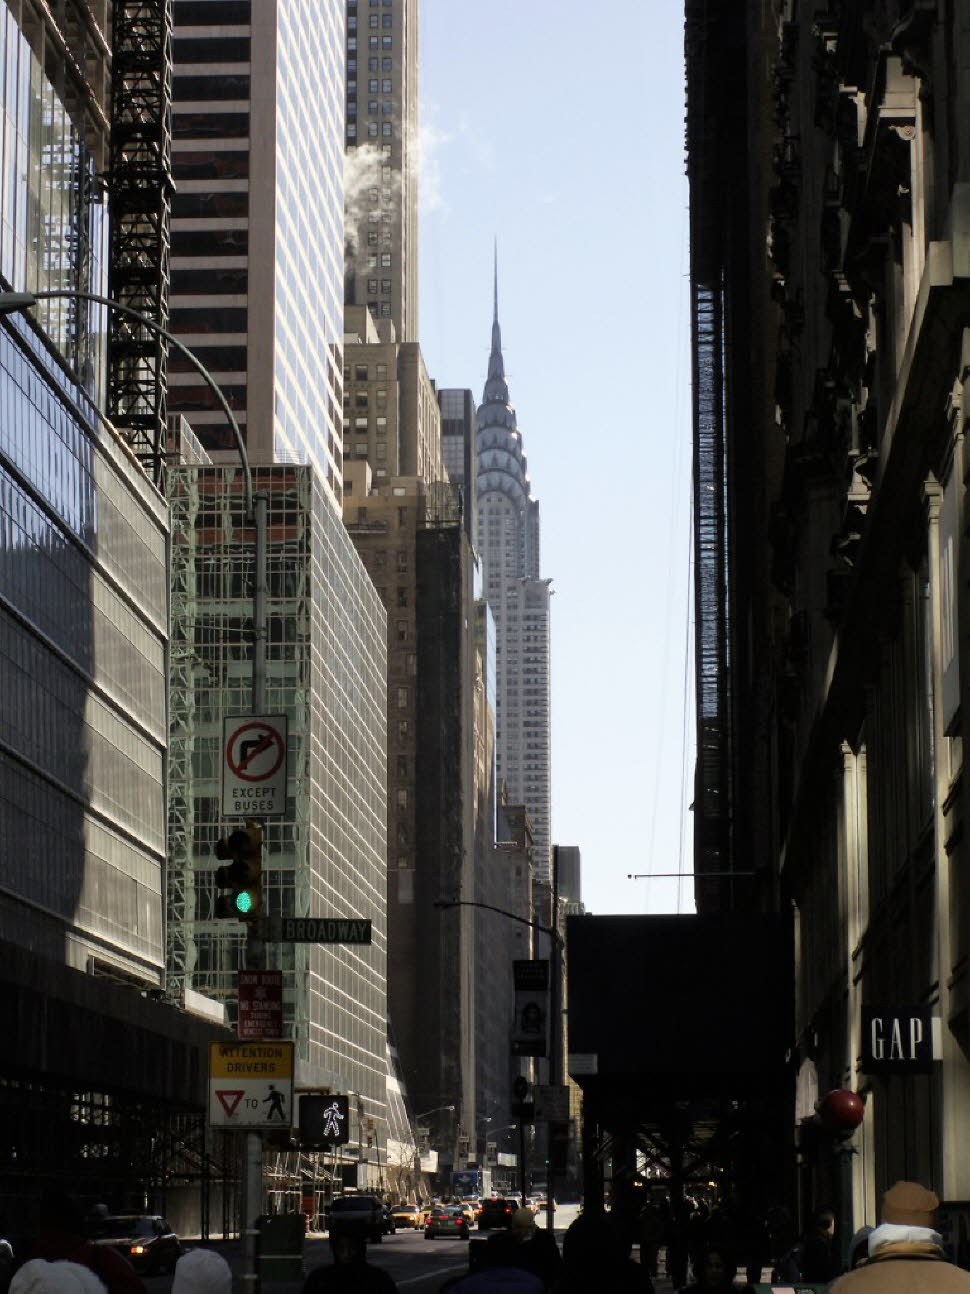 Das Chrysler Building zählt zu den Wahrzeichen der Metropole. Das Chrysler Building zählt mit seiner silber glänzenden Spitze und den darunter liegenden Edelstahlbögen aus der Art-déco-Zeit zu den bekanntesten Hochhäusern der Welt. Es steht im Ruf, dass e